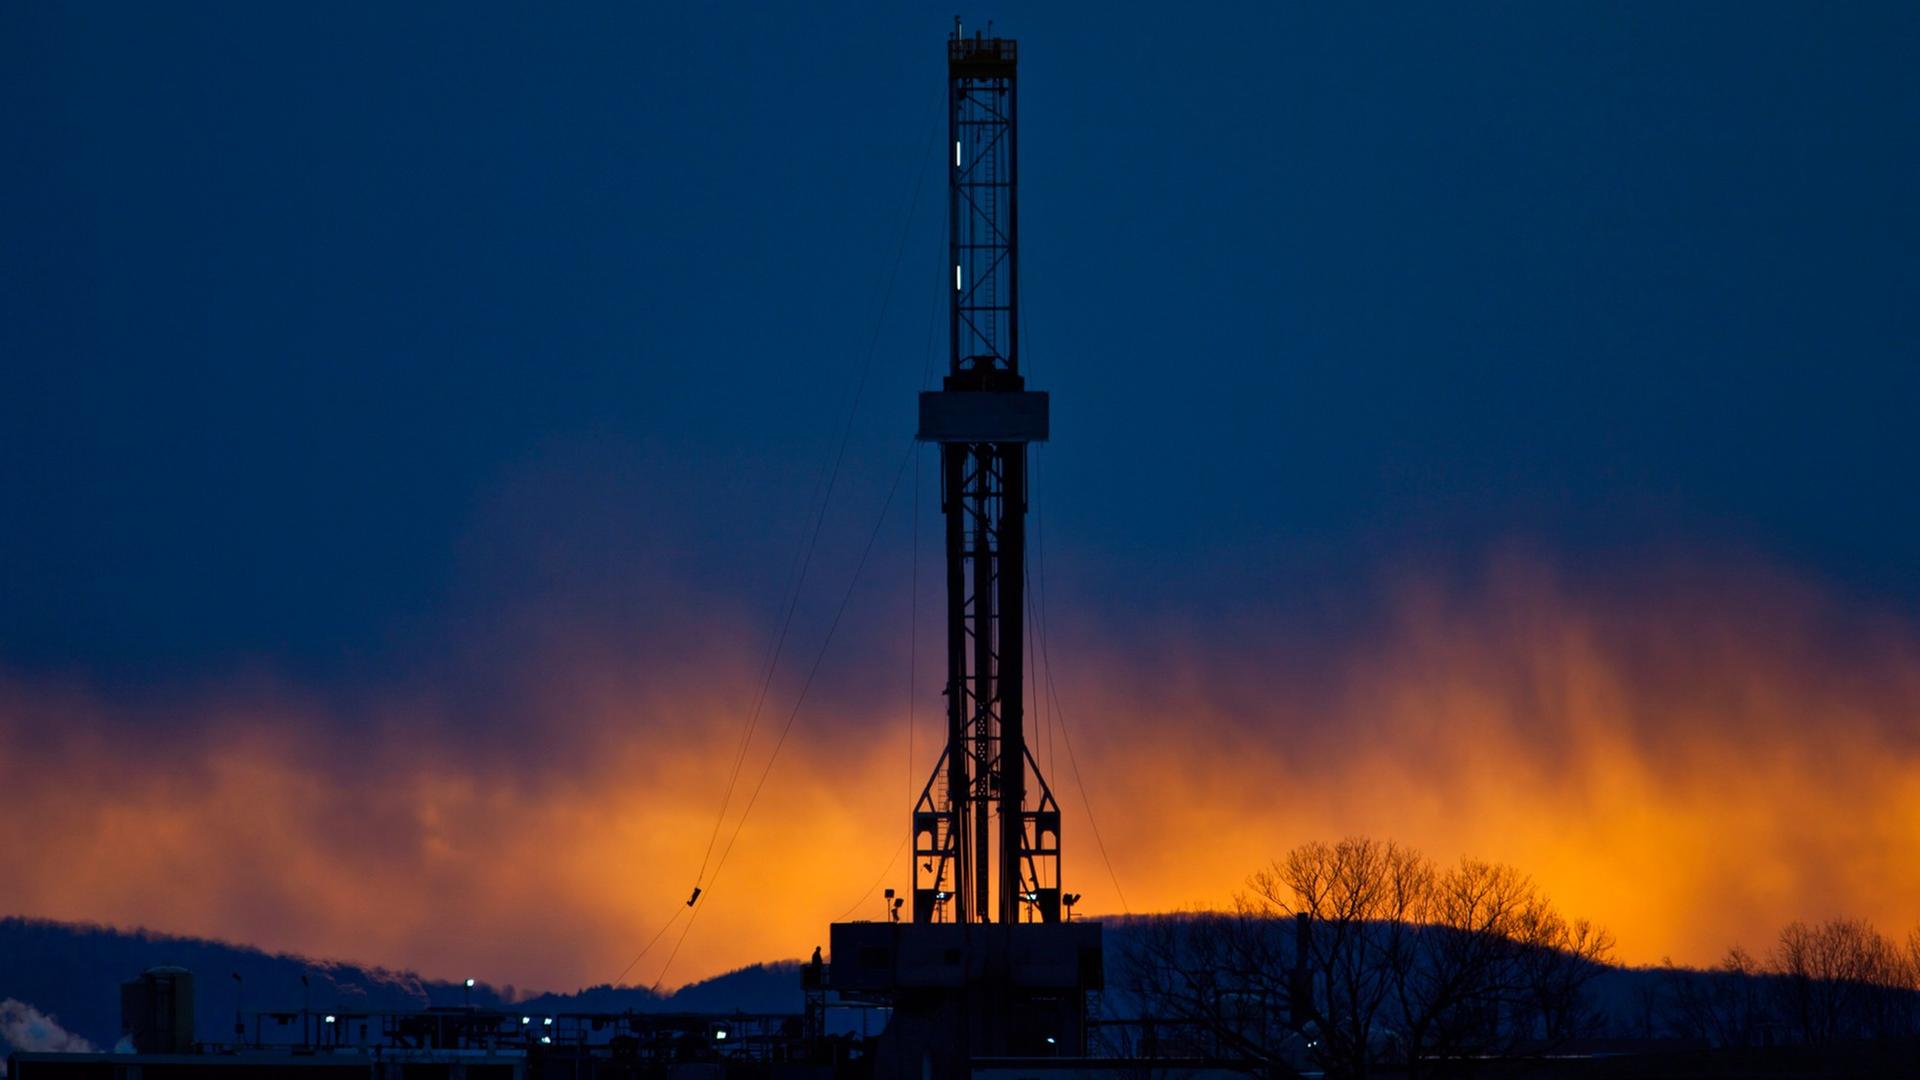 Ein Fracking-Bohrturm in der Abenddämmerung.